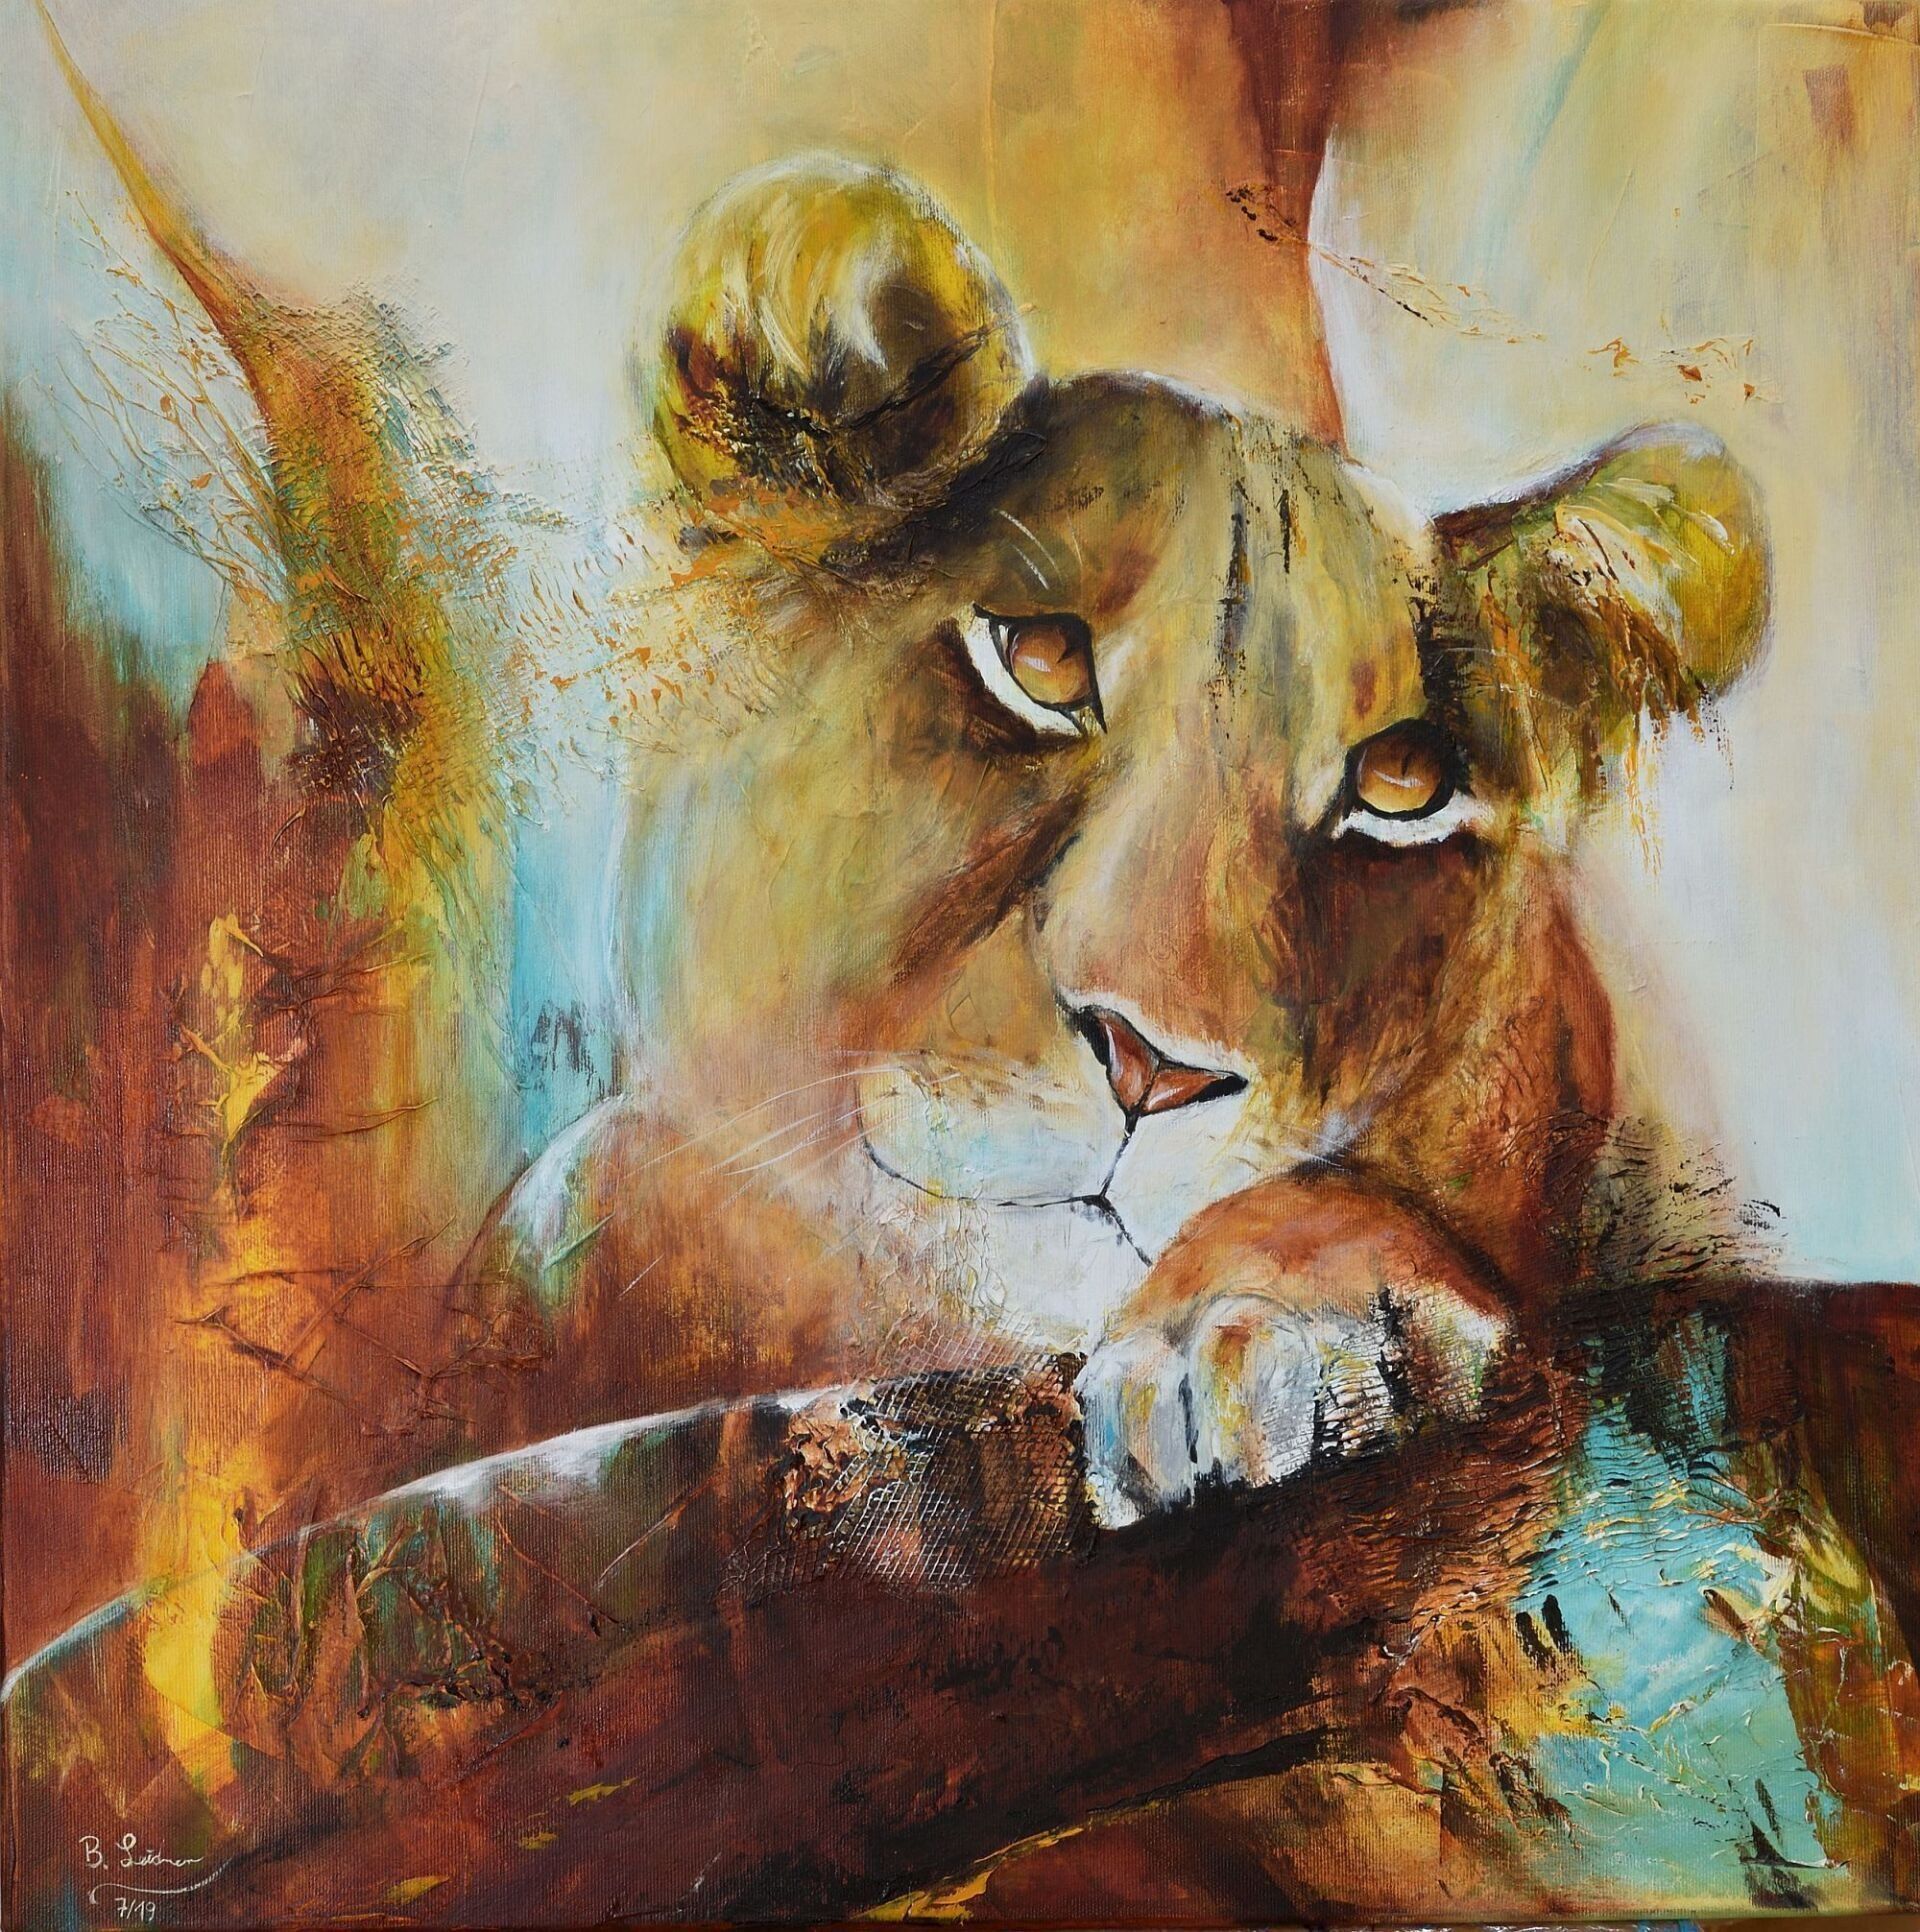 Gemälde einer jungen Löwin, die treuherzig nach oben blickt, in den Farbtönen ocker, weiß, orange, sienna, braun, türkis